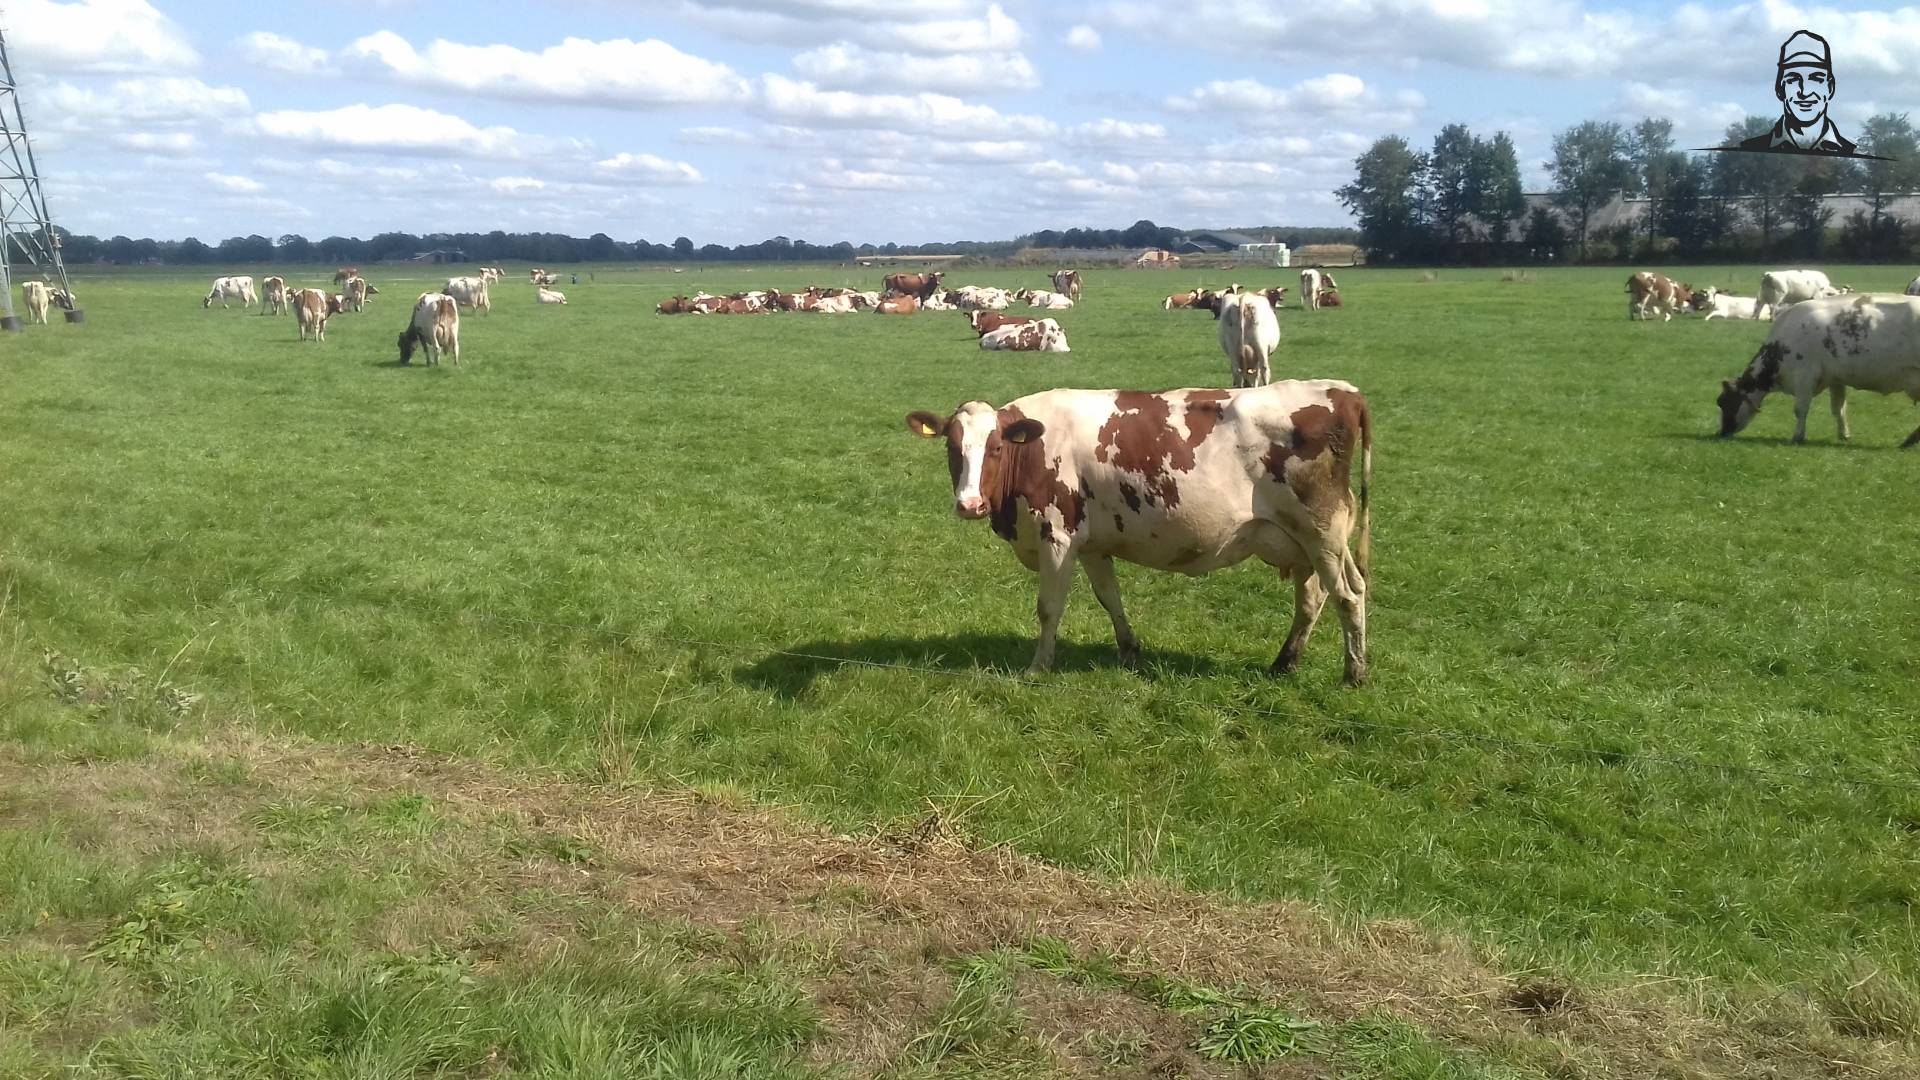 Roodbonte koeien van interfan1055